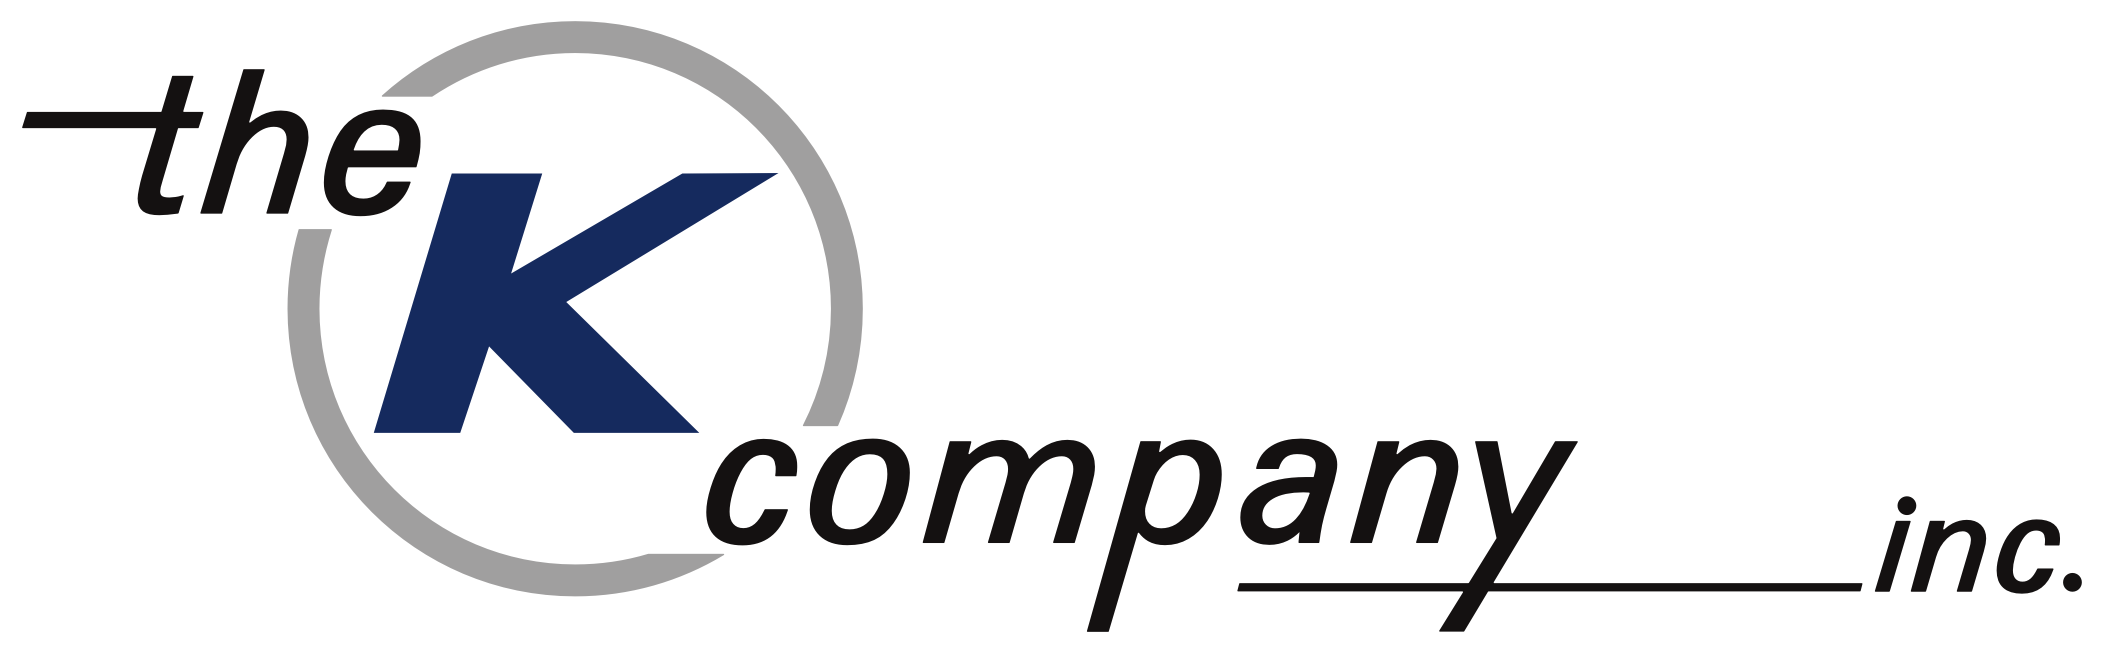 The K Company, Inc. logo